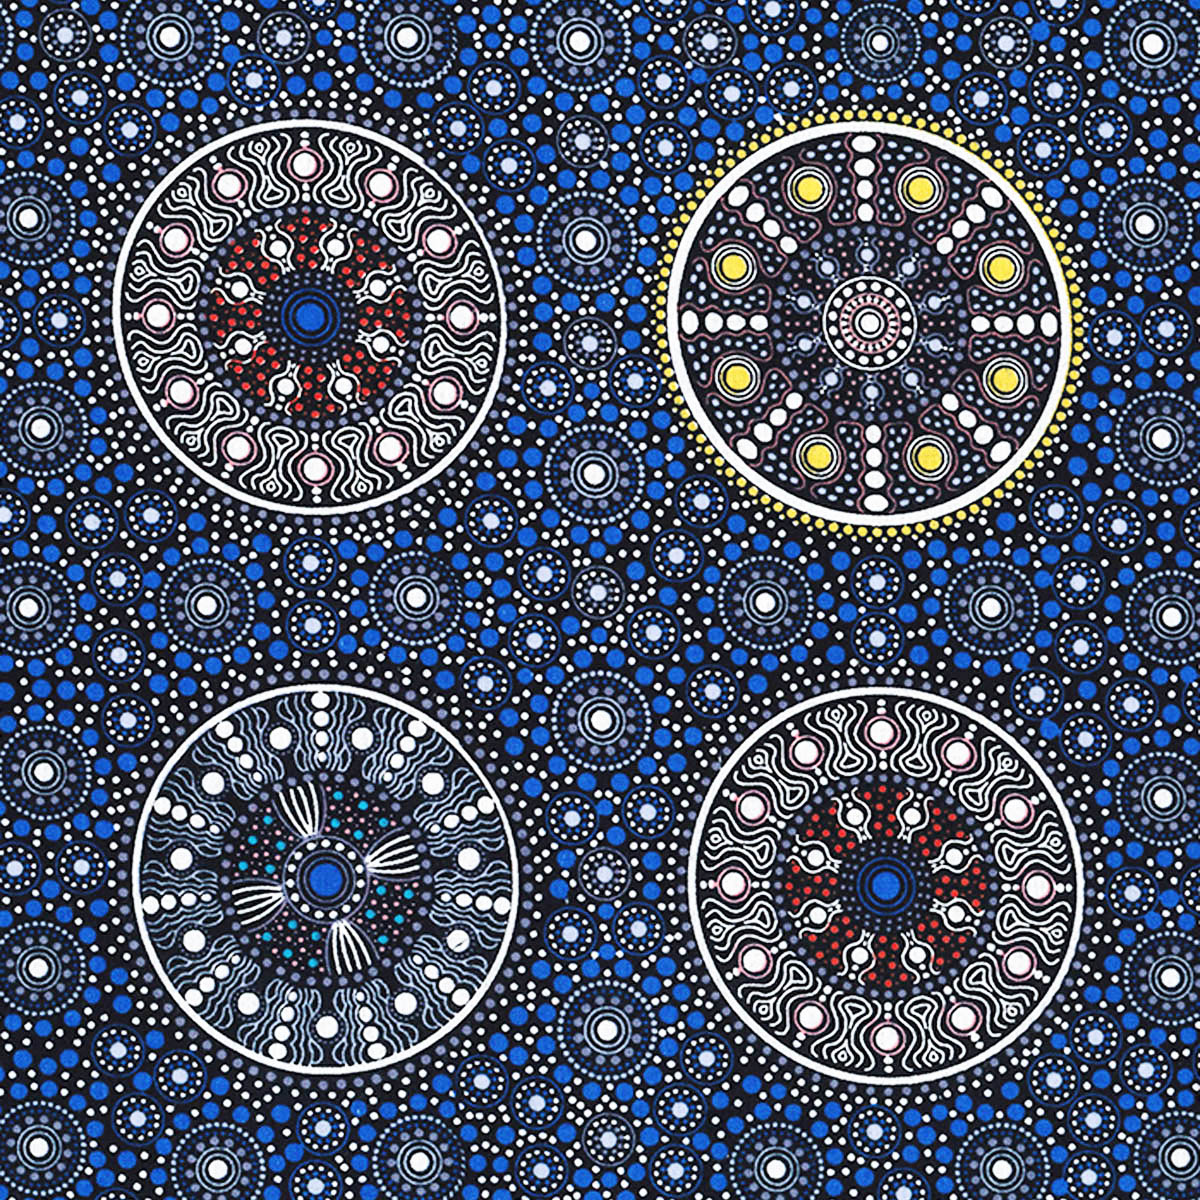 WILDFLOWERS AFTER RAIN BLUE by Aboriginal Artist LETISHA DOOLAN